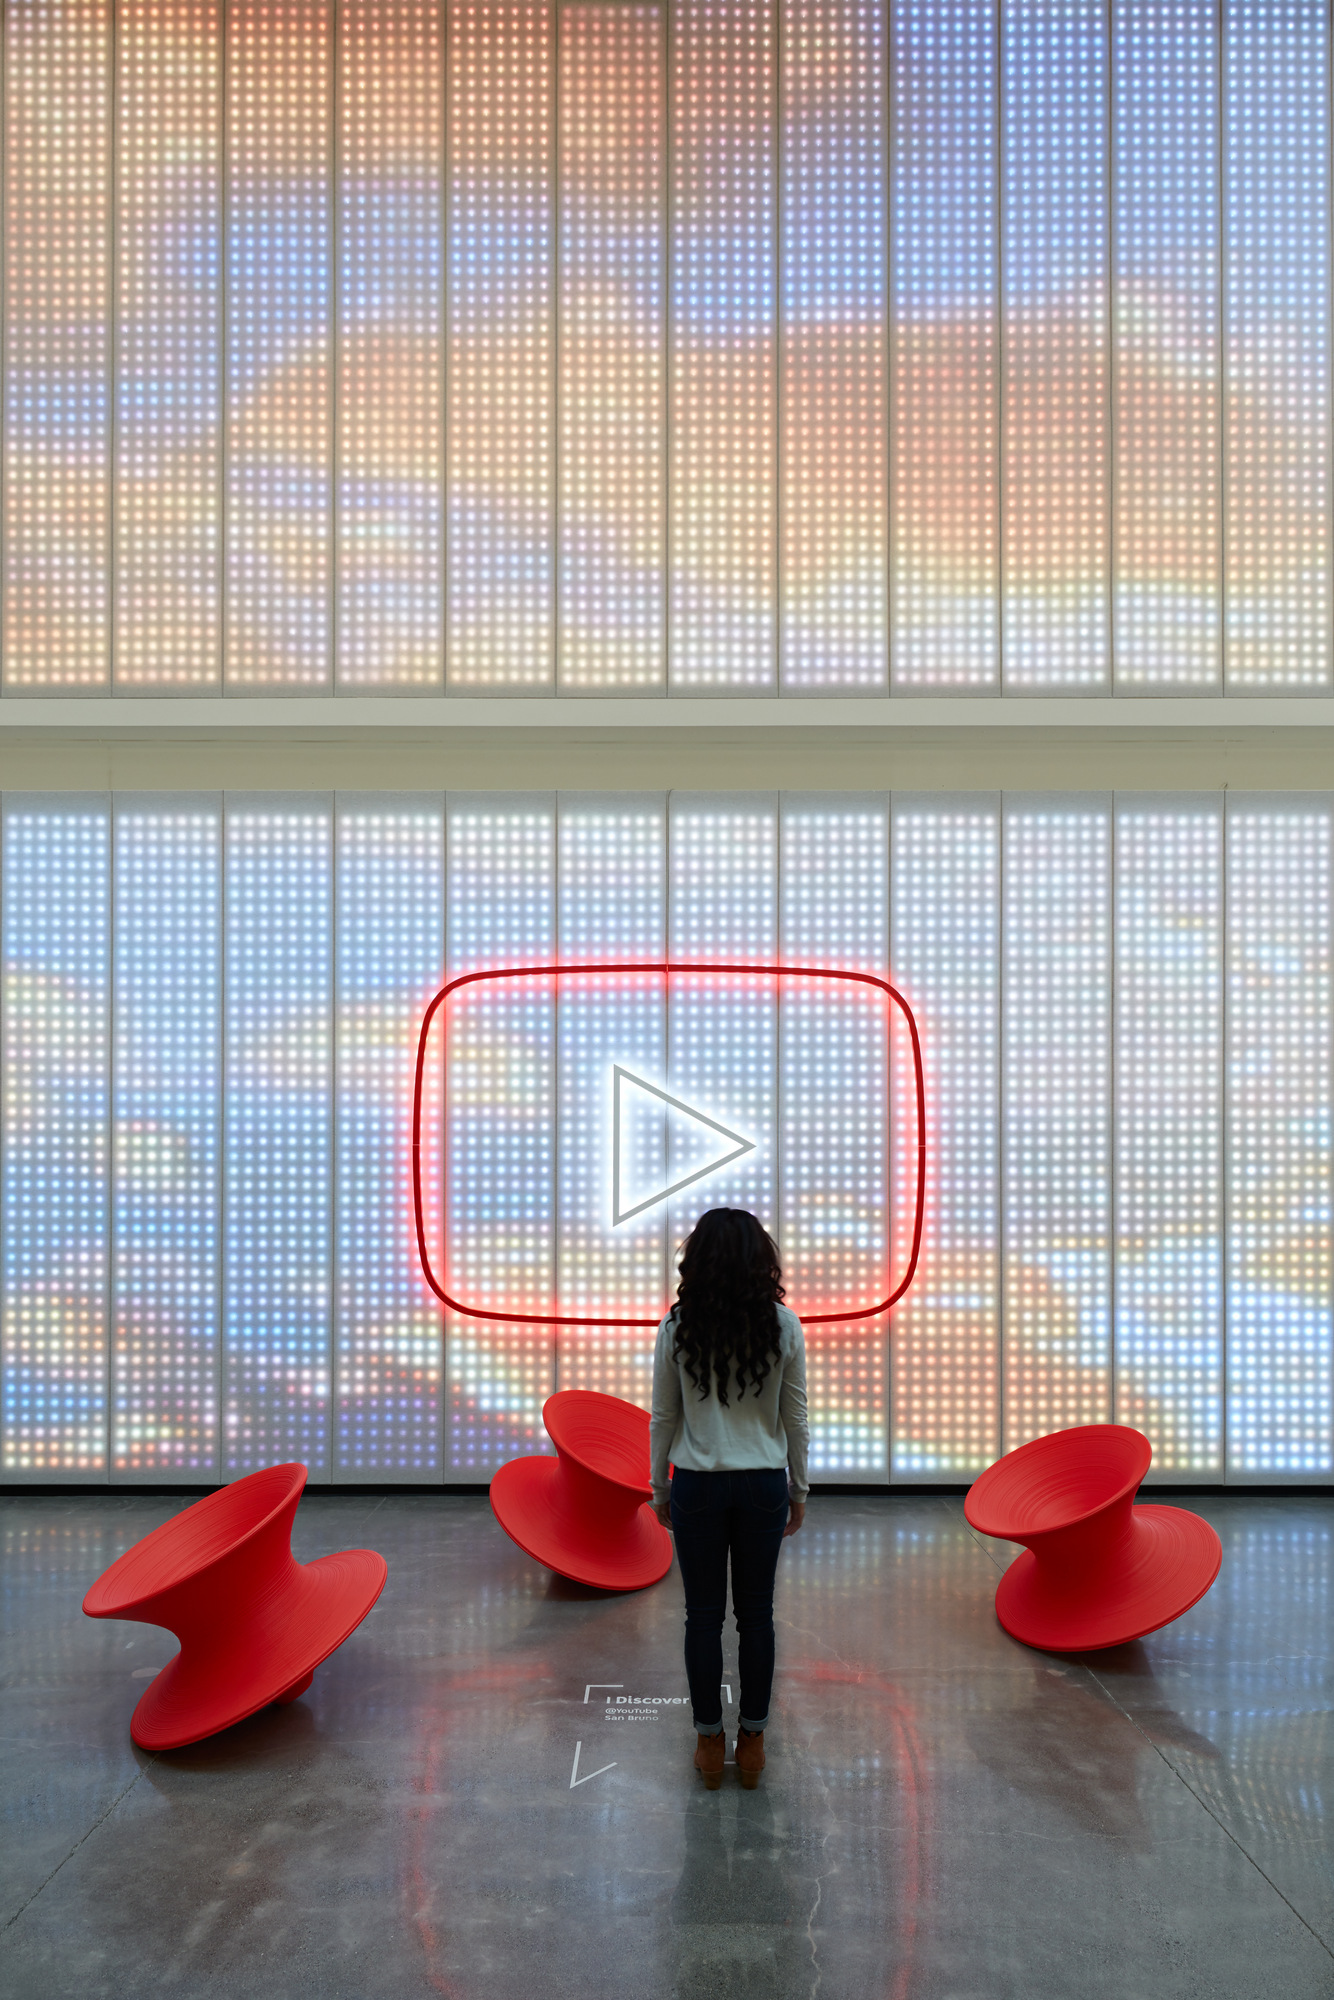 图片[7]|YouTube总部大厅-圣布鲁诺|ART-Arrakis | 建筑室内设计的创新与灵感